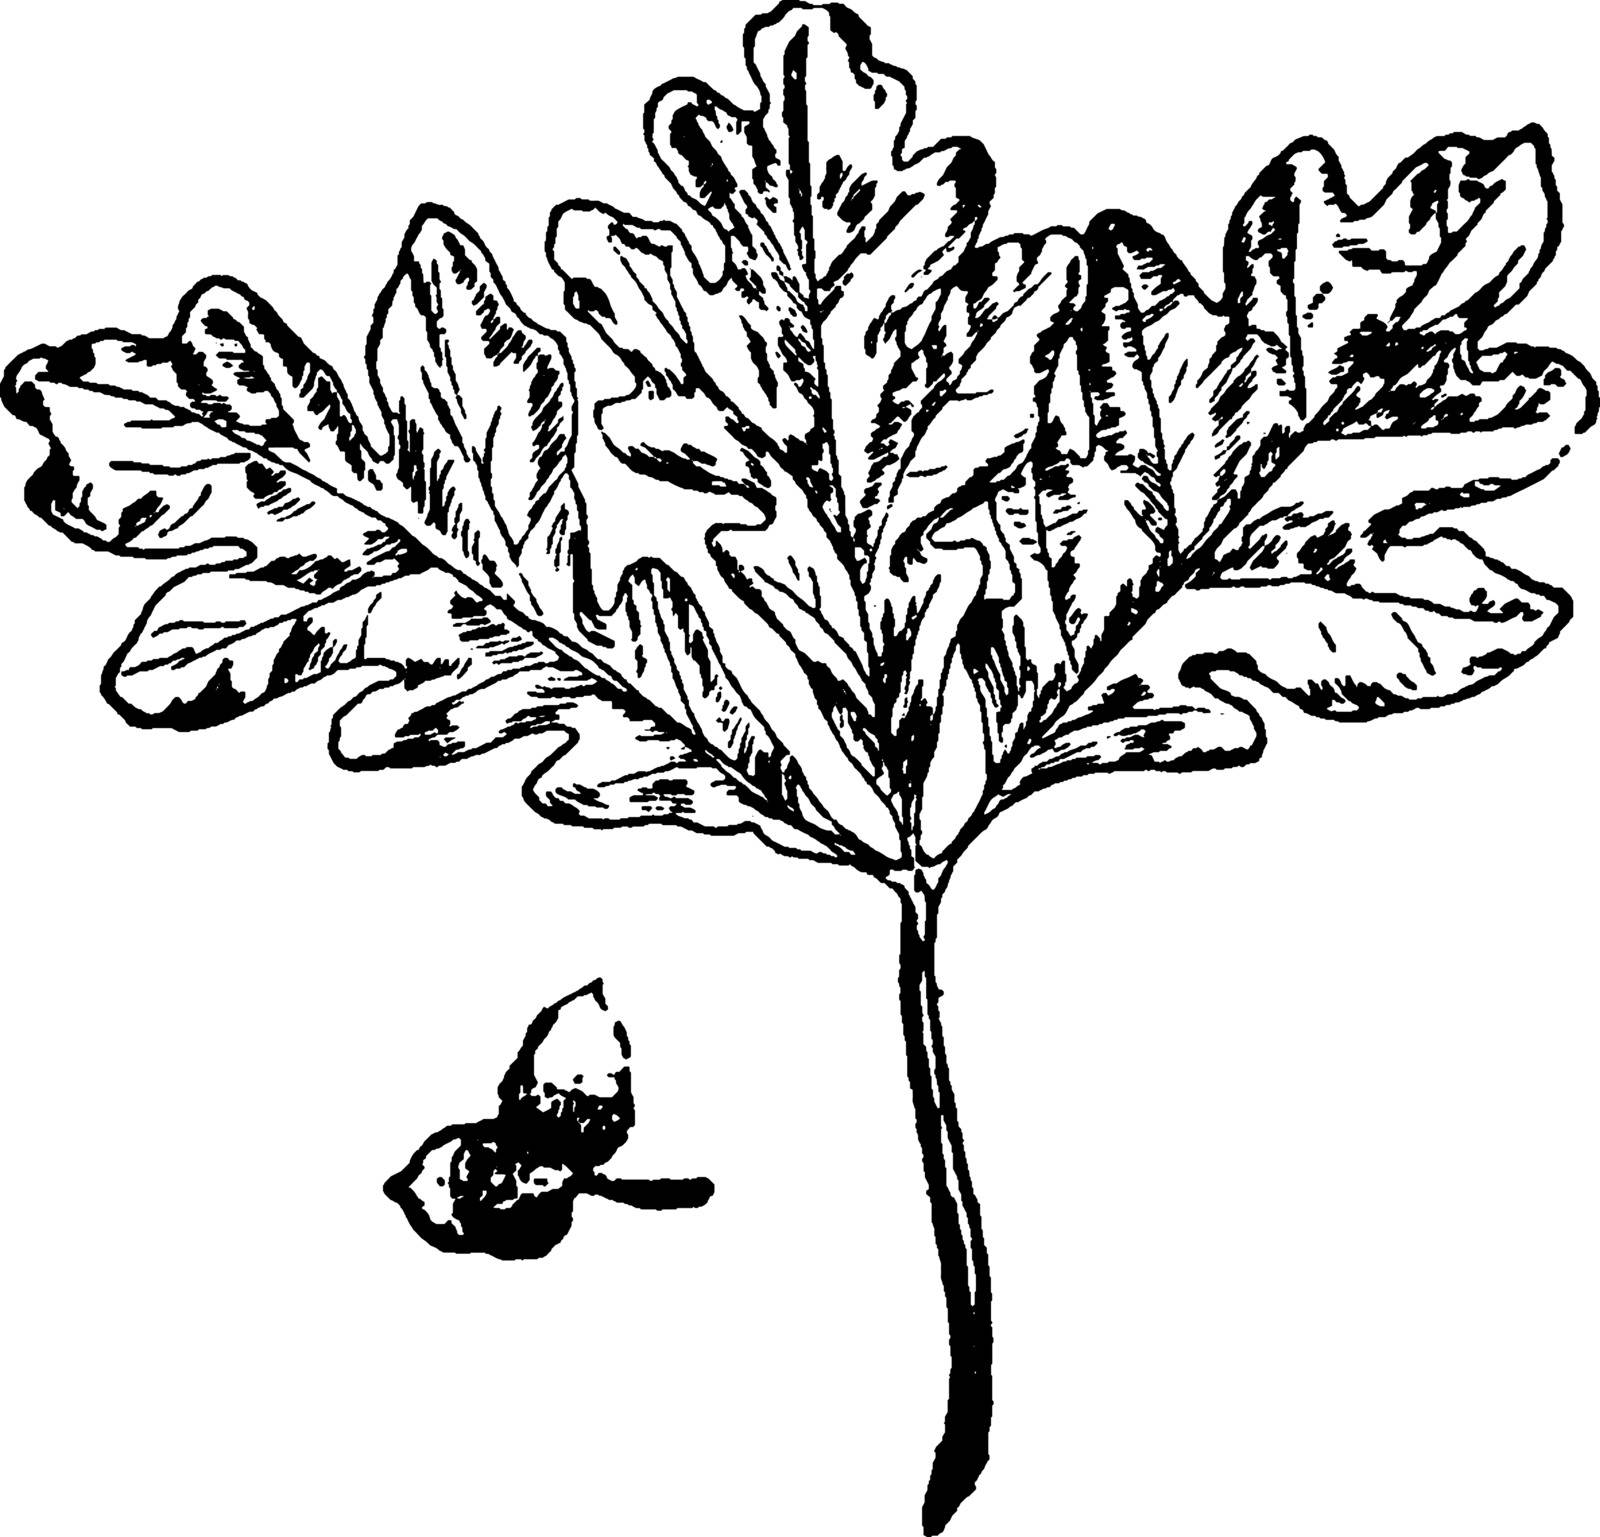 White Oak Leaf vintage illustration.  by Morphart